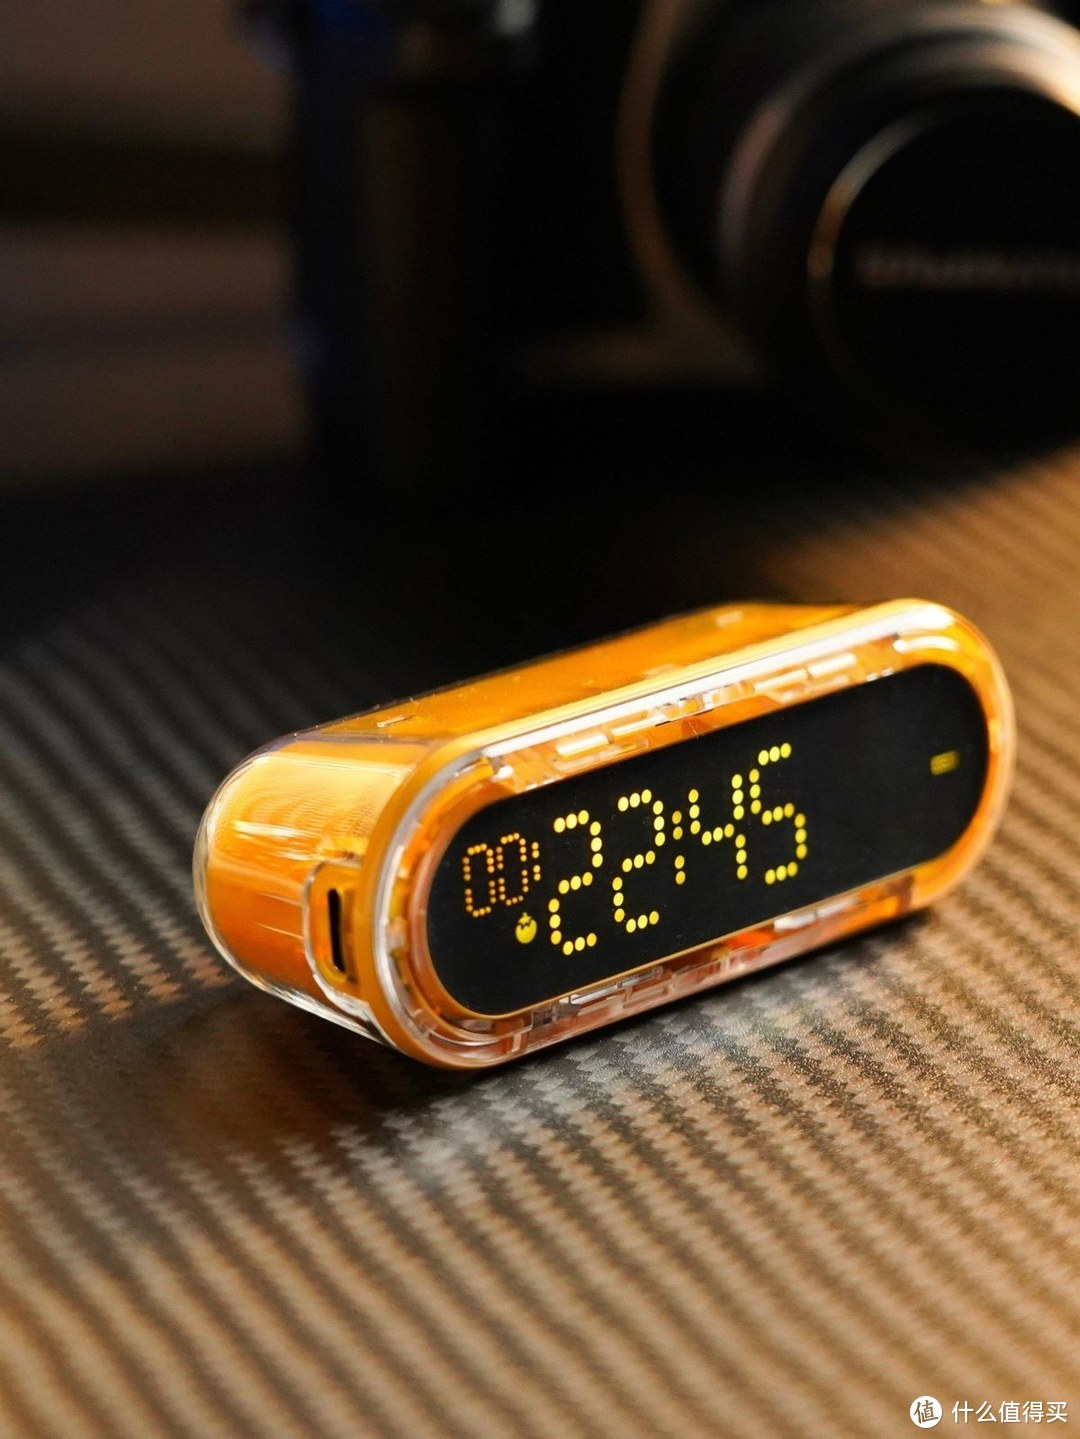 闪极——重力时间胶囊，这款重力时间胶囊又可以当做充电宝使用，又可以当做计时器来使用。